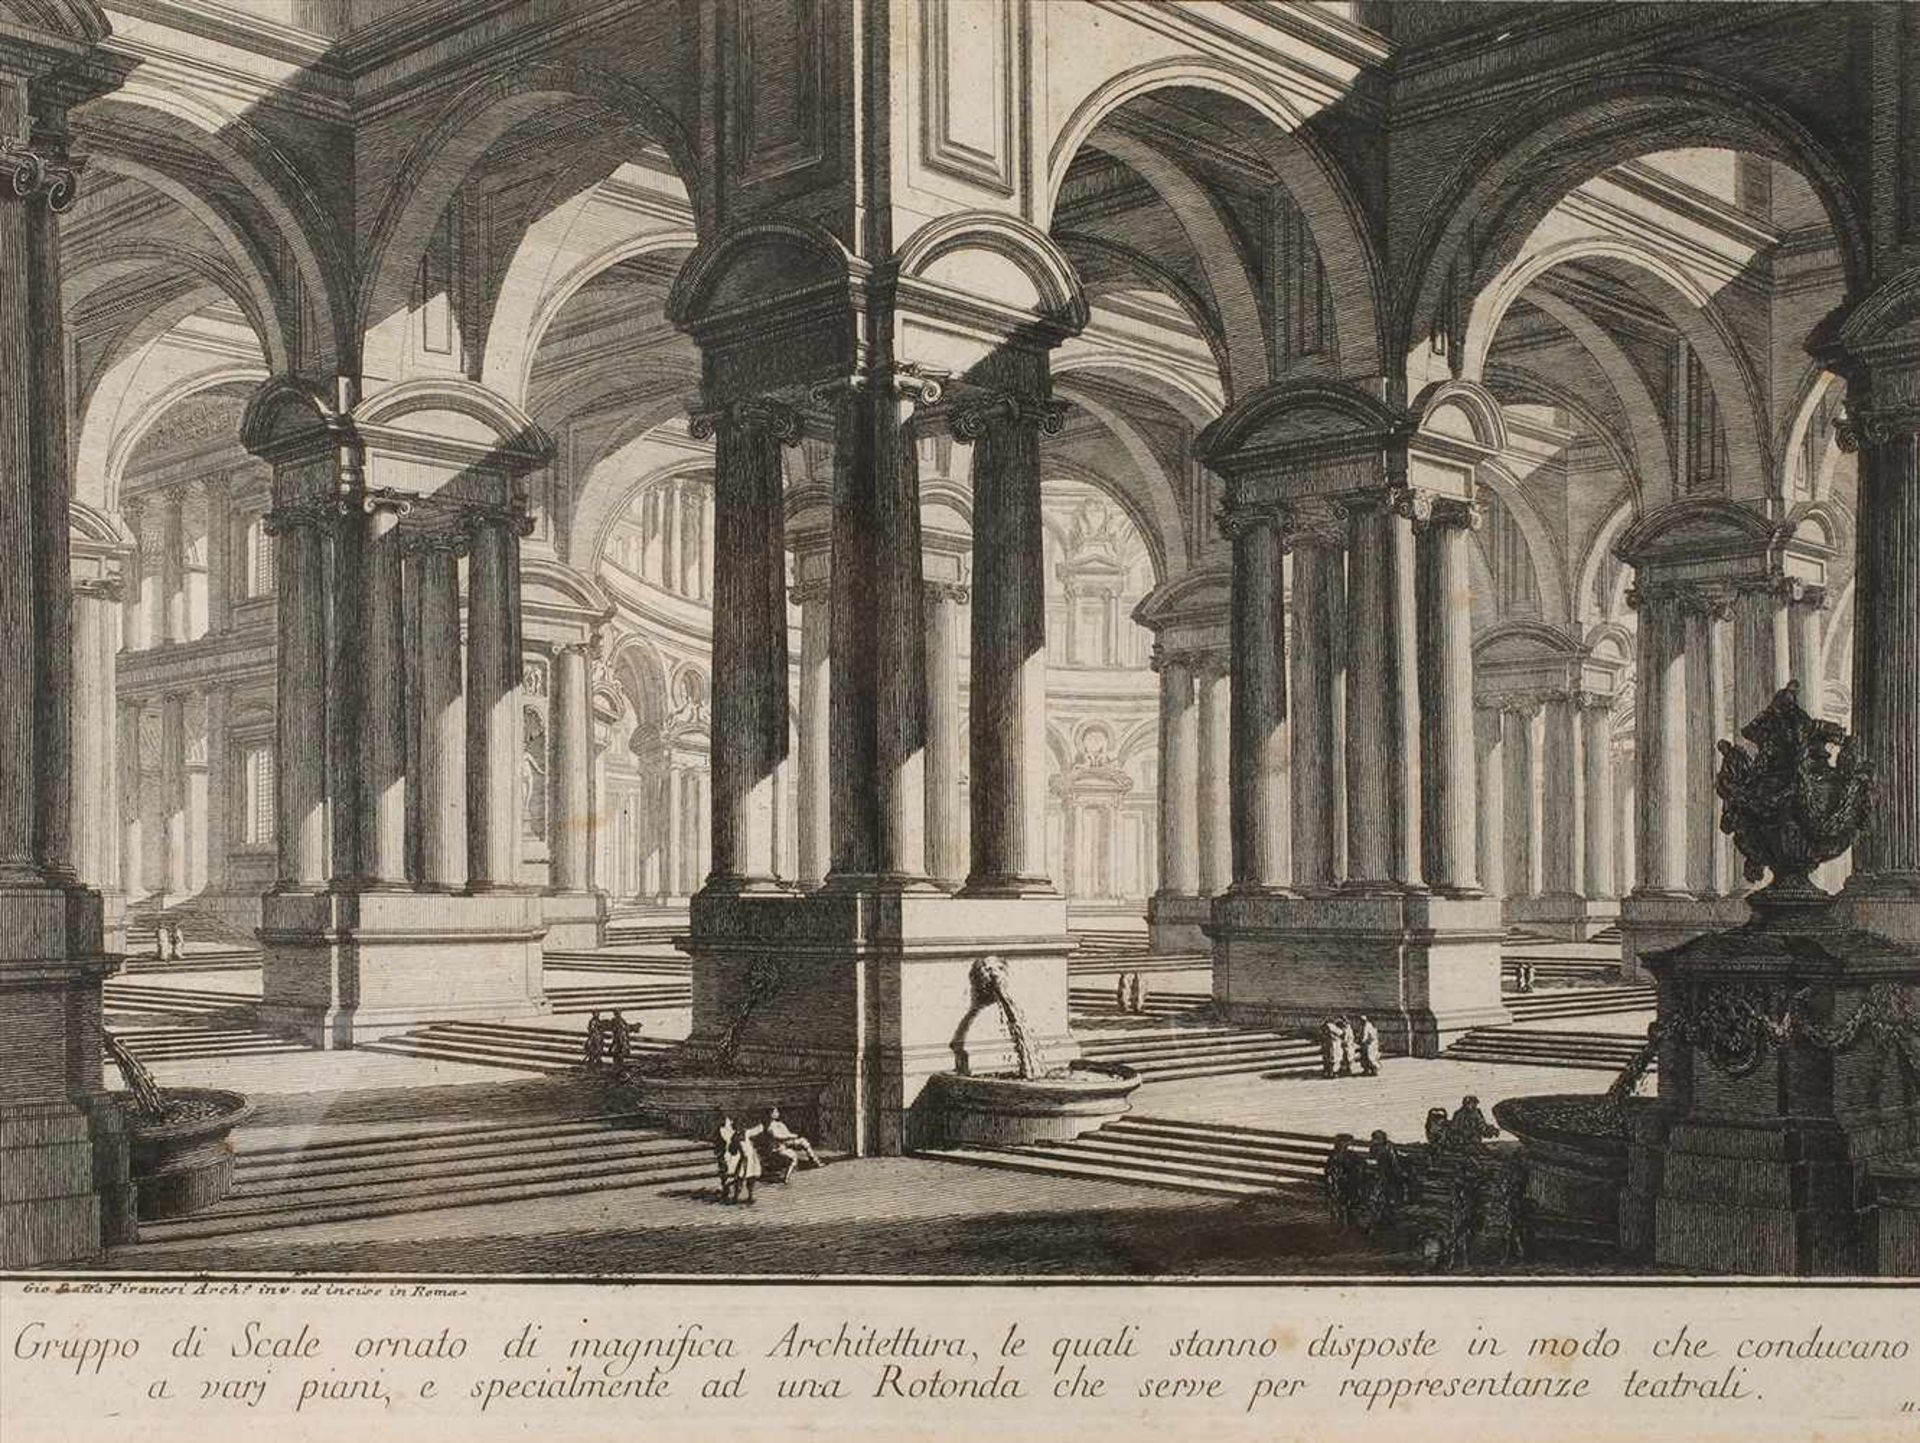 Giovanni Battista Piranesi, "Gruppo di Scale..."riesige Eingangshalle mit zahlreichen Brunnen und